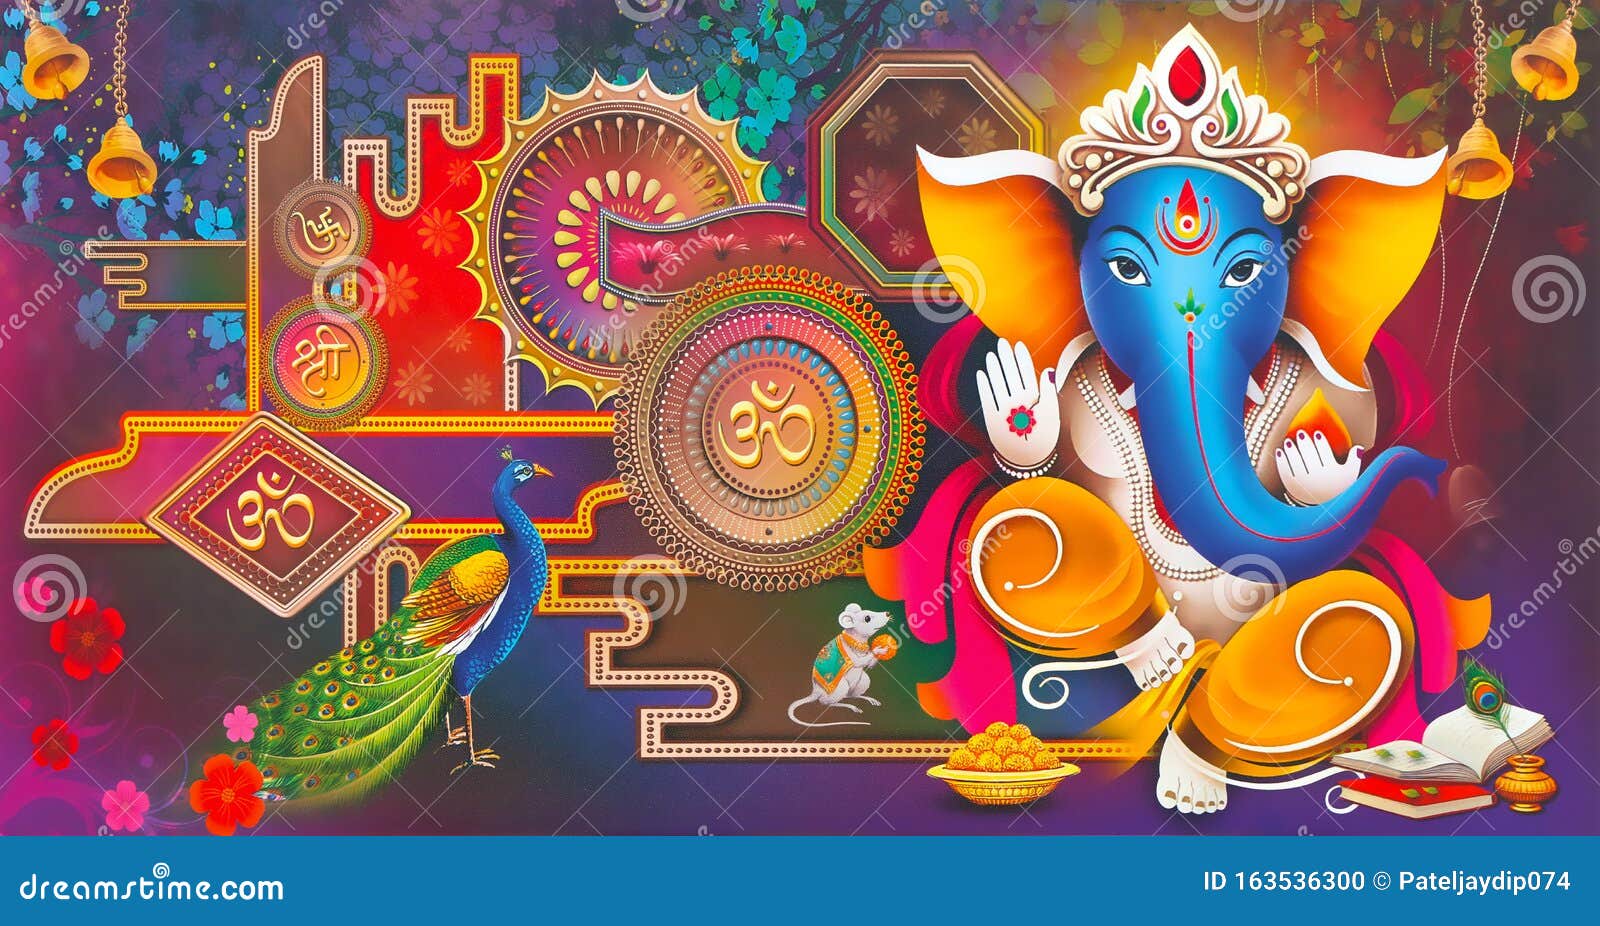 Ganesh Wallpaper Images  Free Download on Freepik